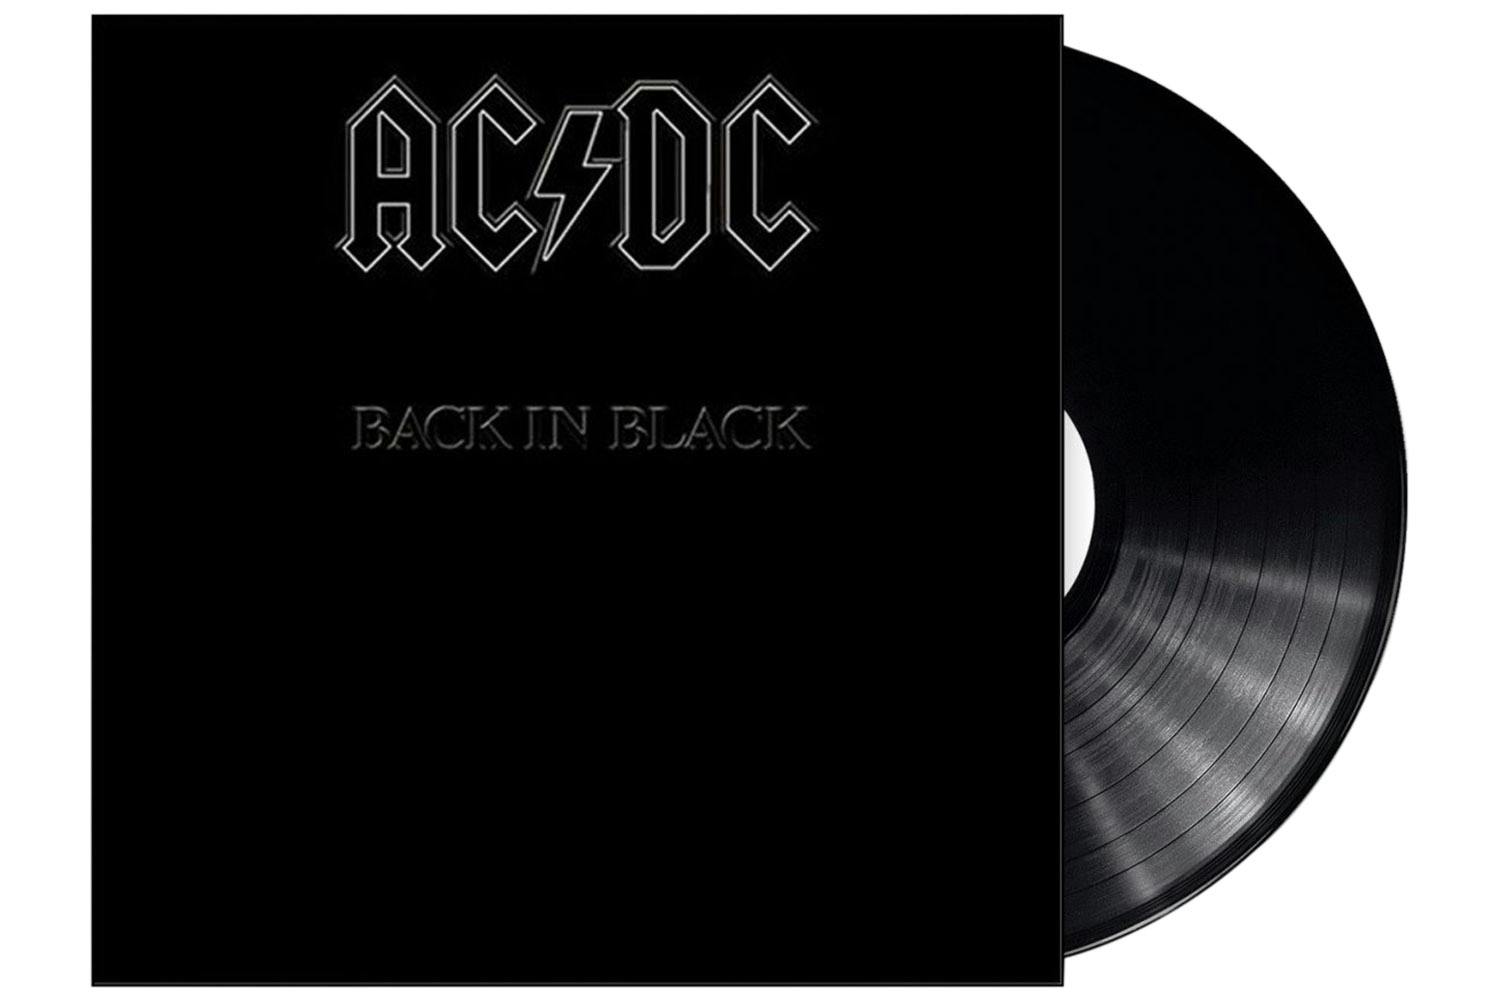 Back i black. Пластинка AC DC back in Black. Виниловая пластинка АС ДС back in Black. AC DC back in Black альбом. AC/DC винил черный альбом.